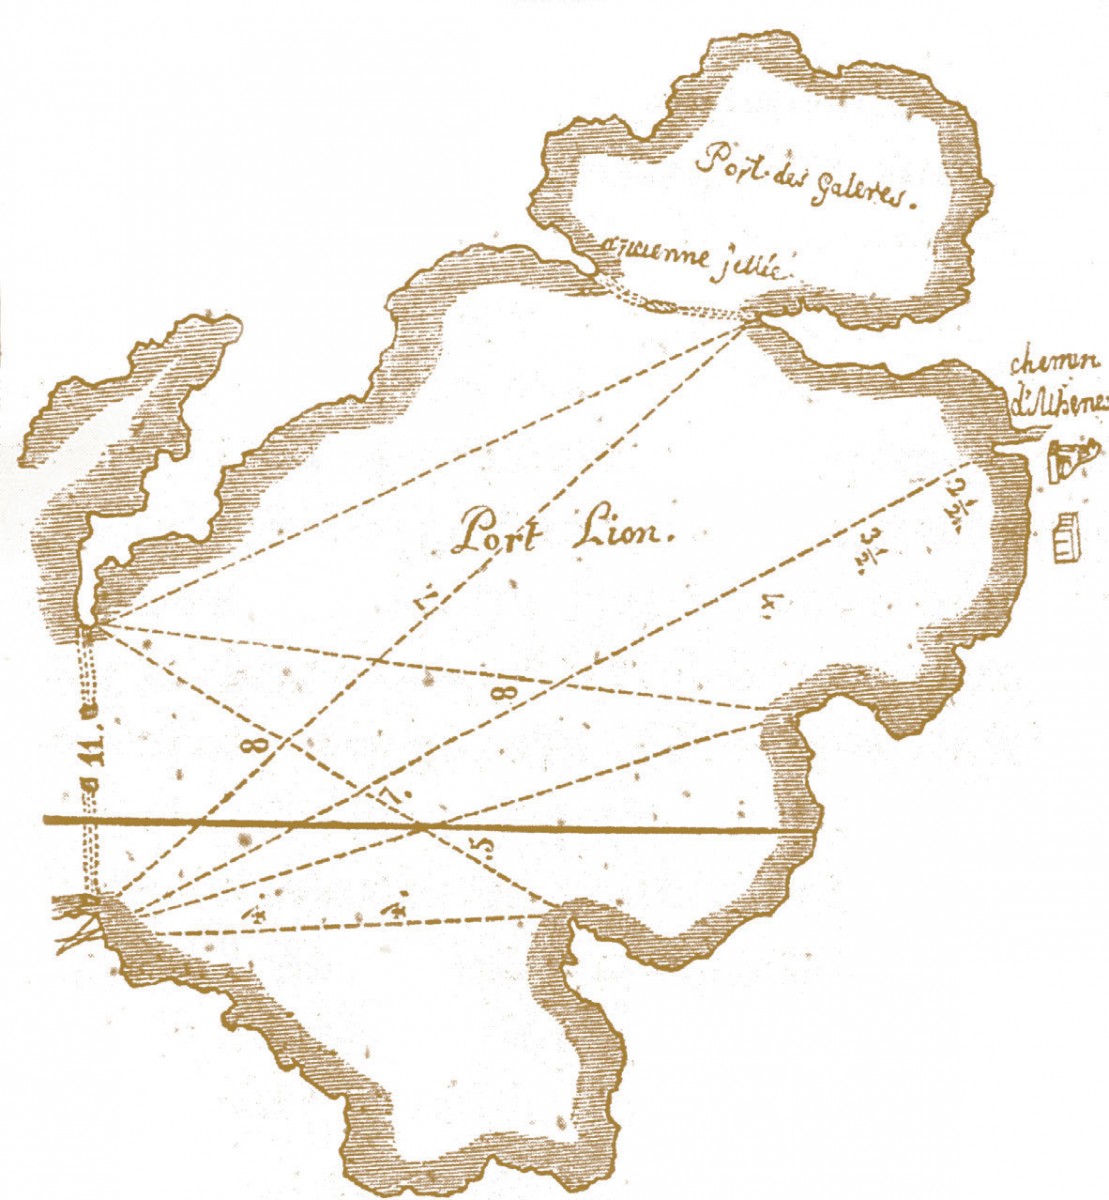 Πειραιάς, χάρτης του 17ου αιώνα των αδελφών Combes.